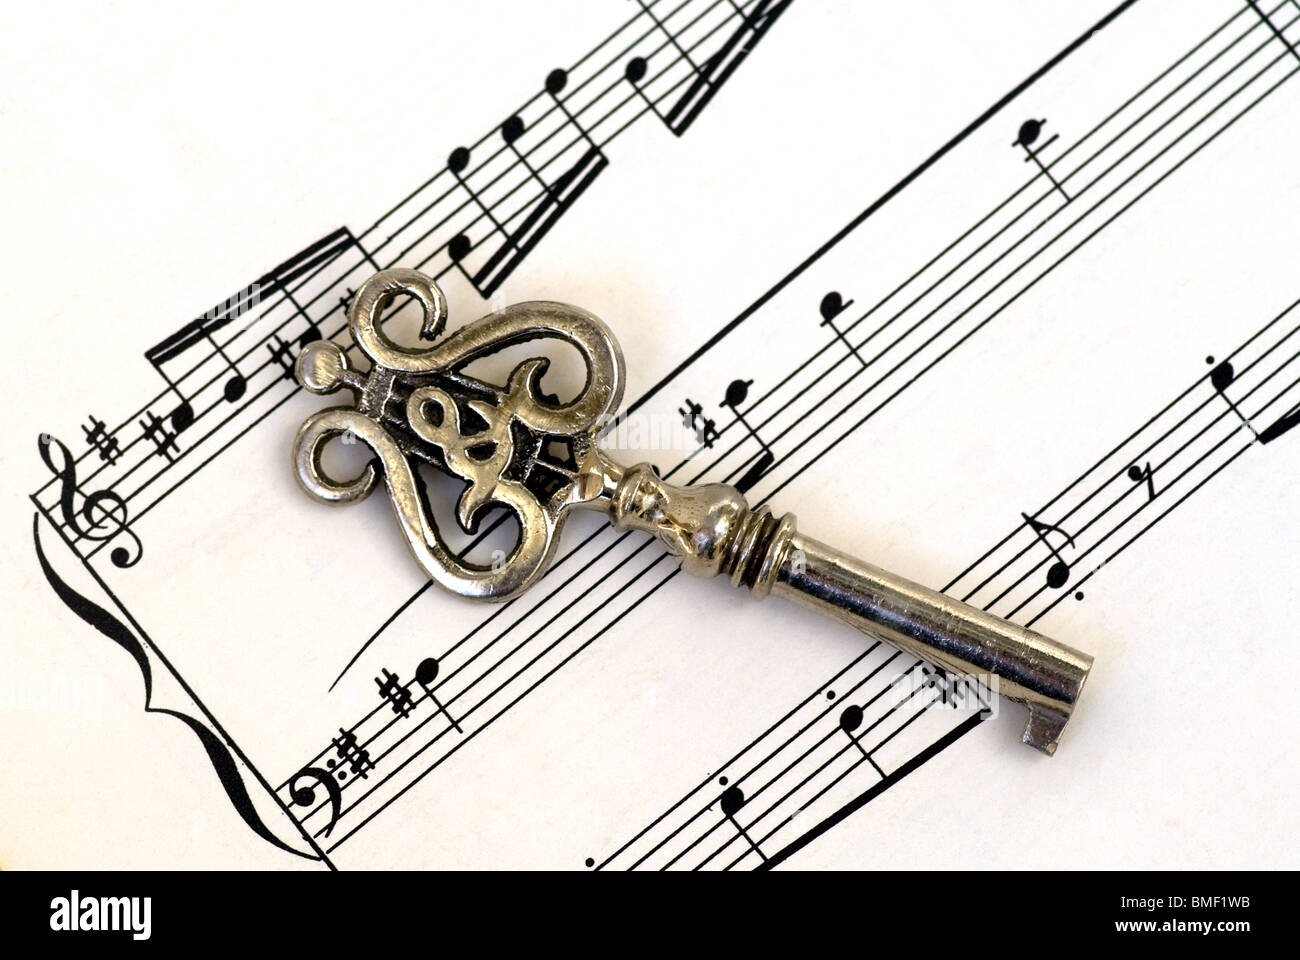 Touche de musique antique de clef d'aigus sur une page de la musique de feuille placée à un angle dans un gros plan. Banque D'Images